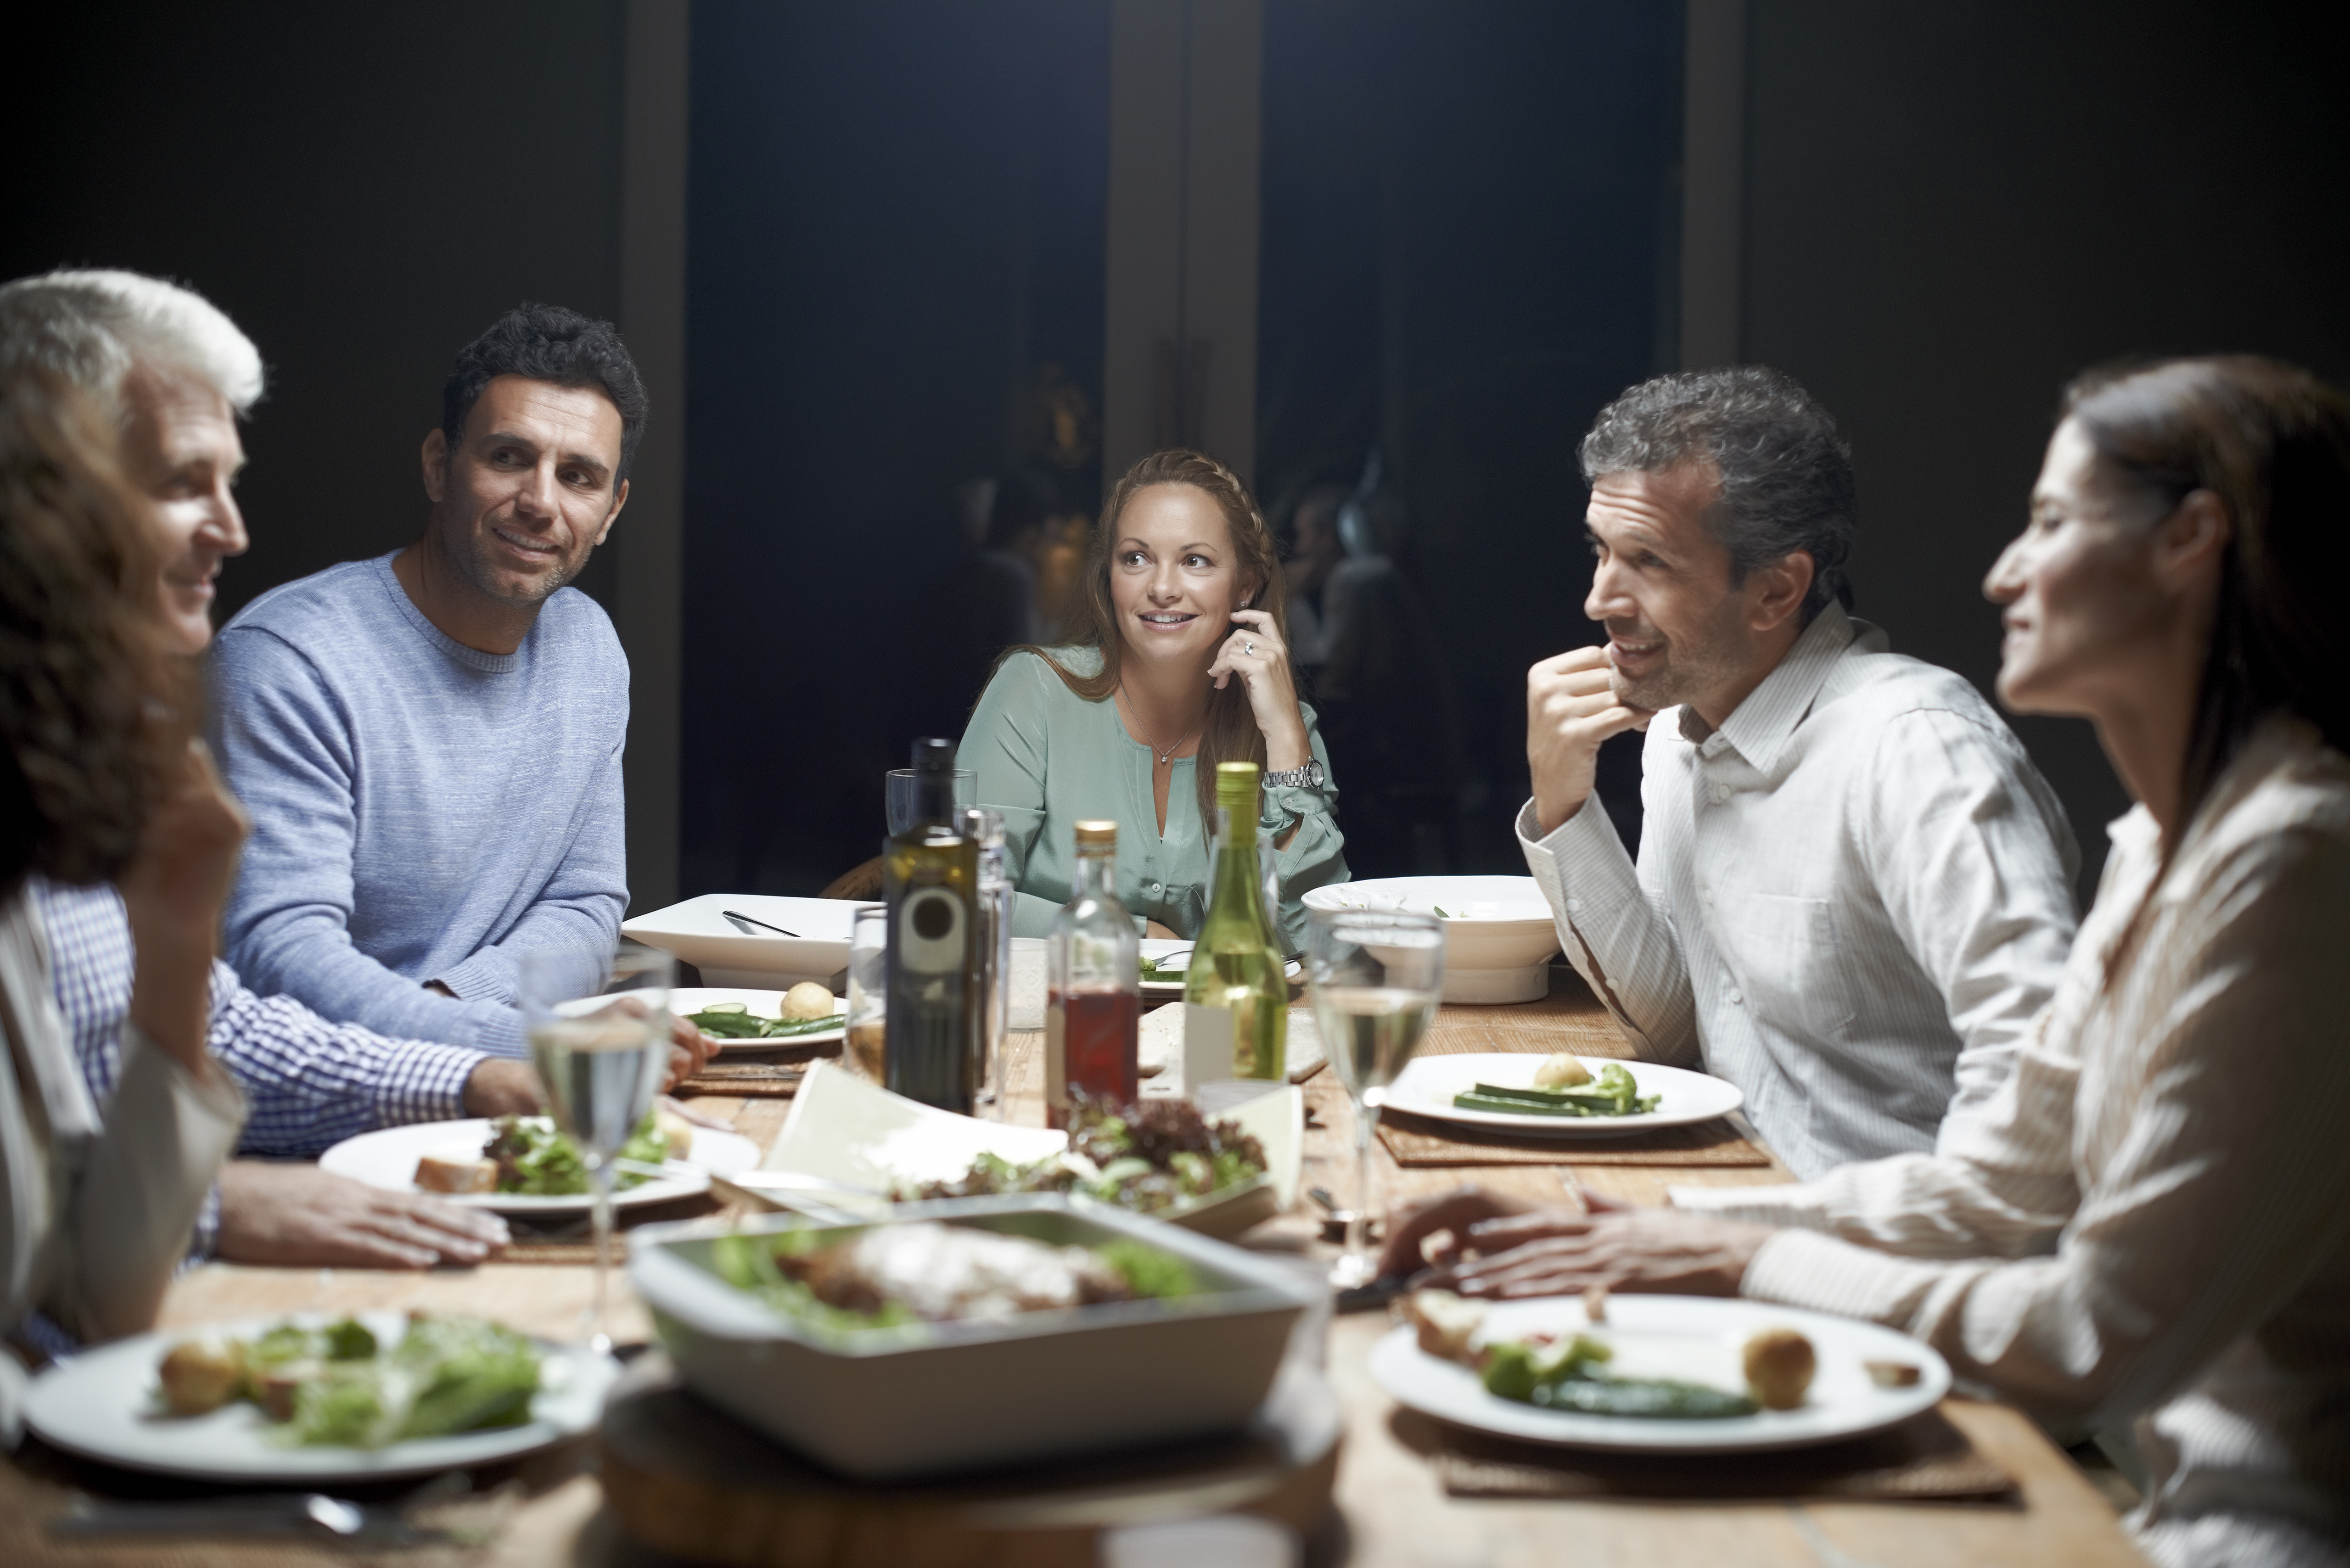 Amigos cenan en la mesa | Fuente: Getty Images